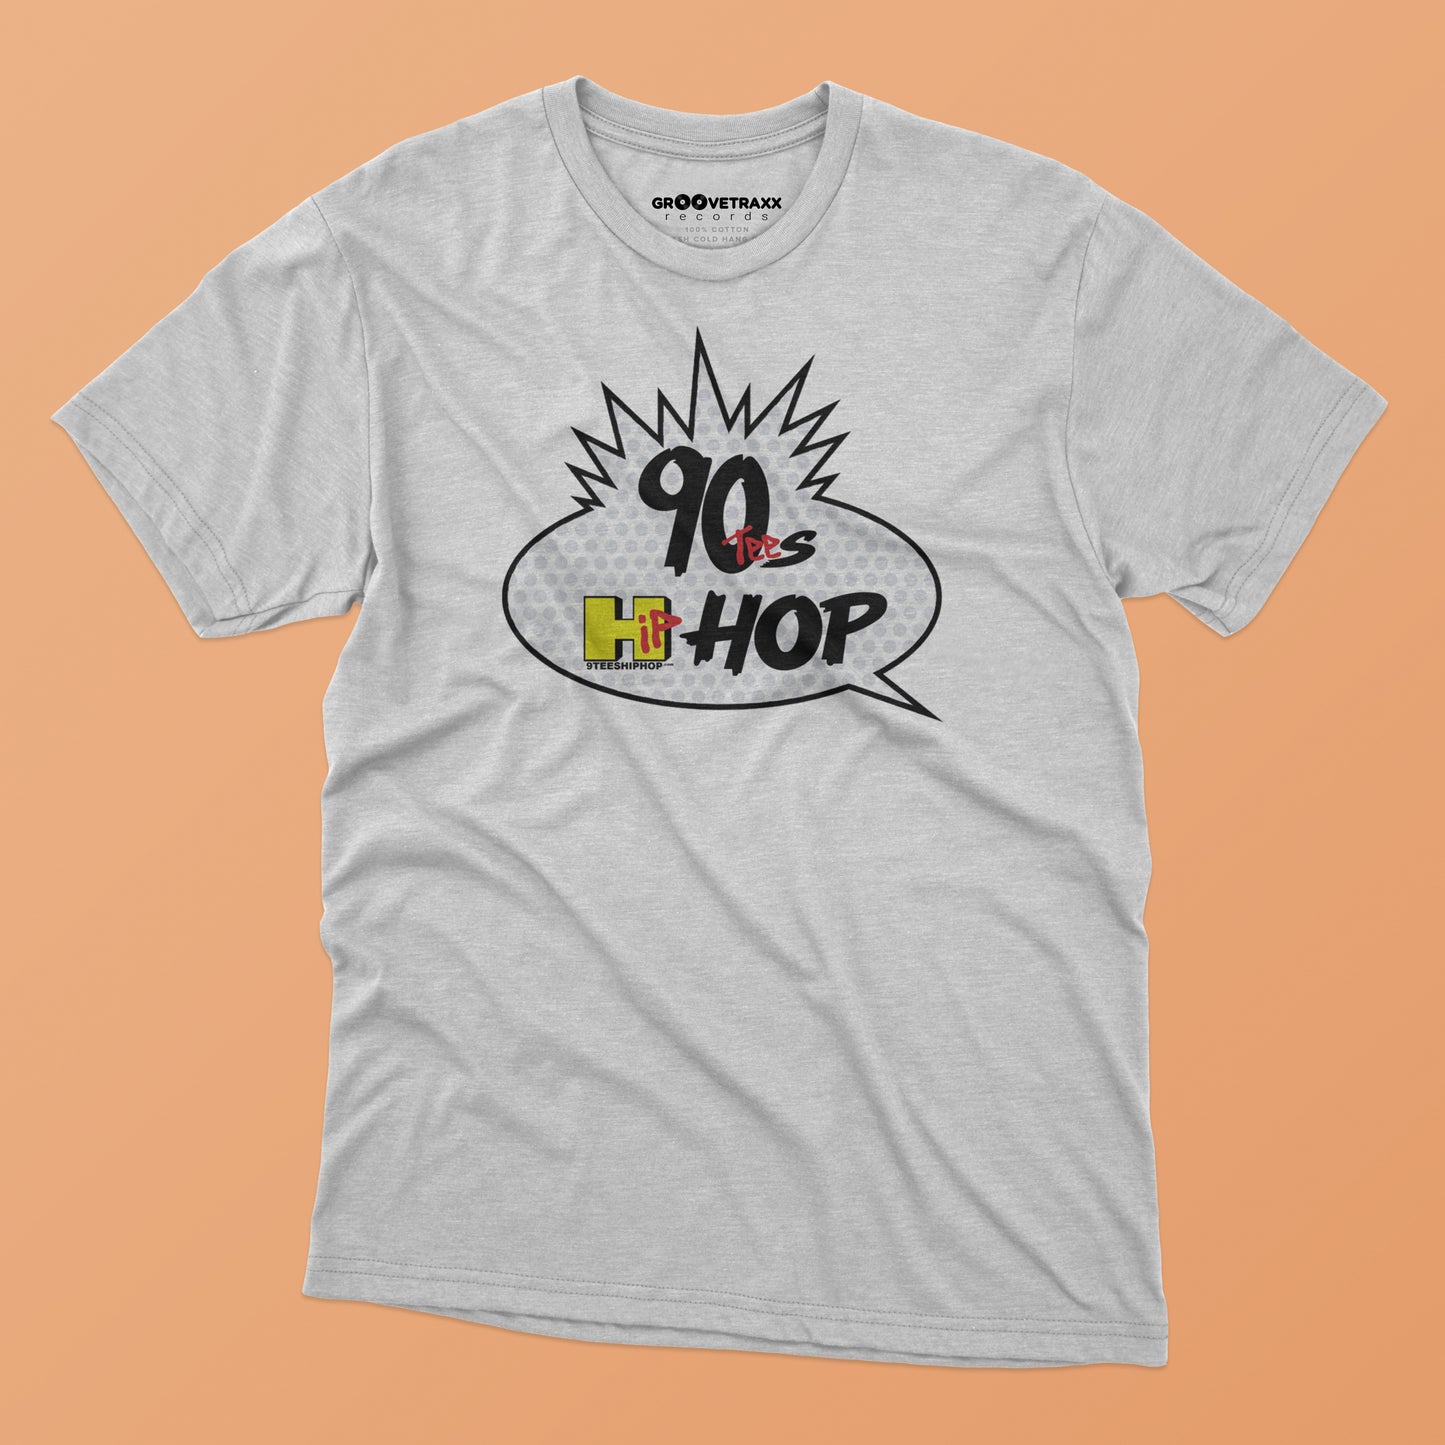 TEST MERCH #02 : T-shirt Hip Hop des années 90